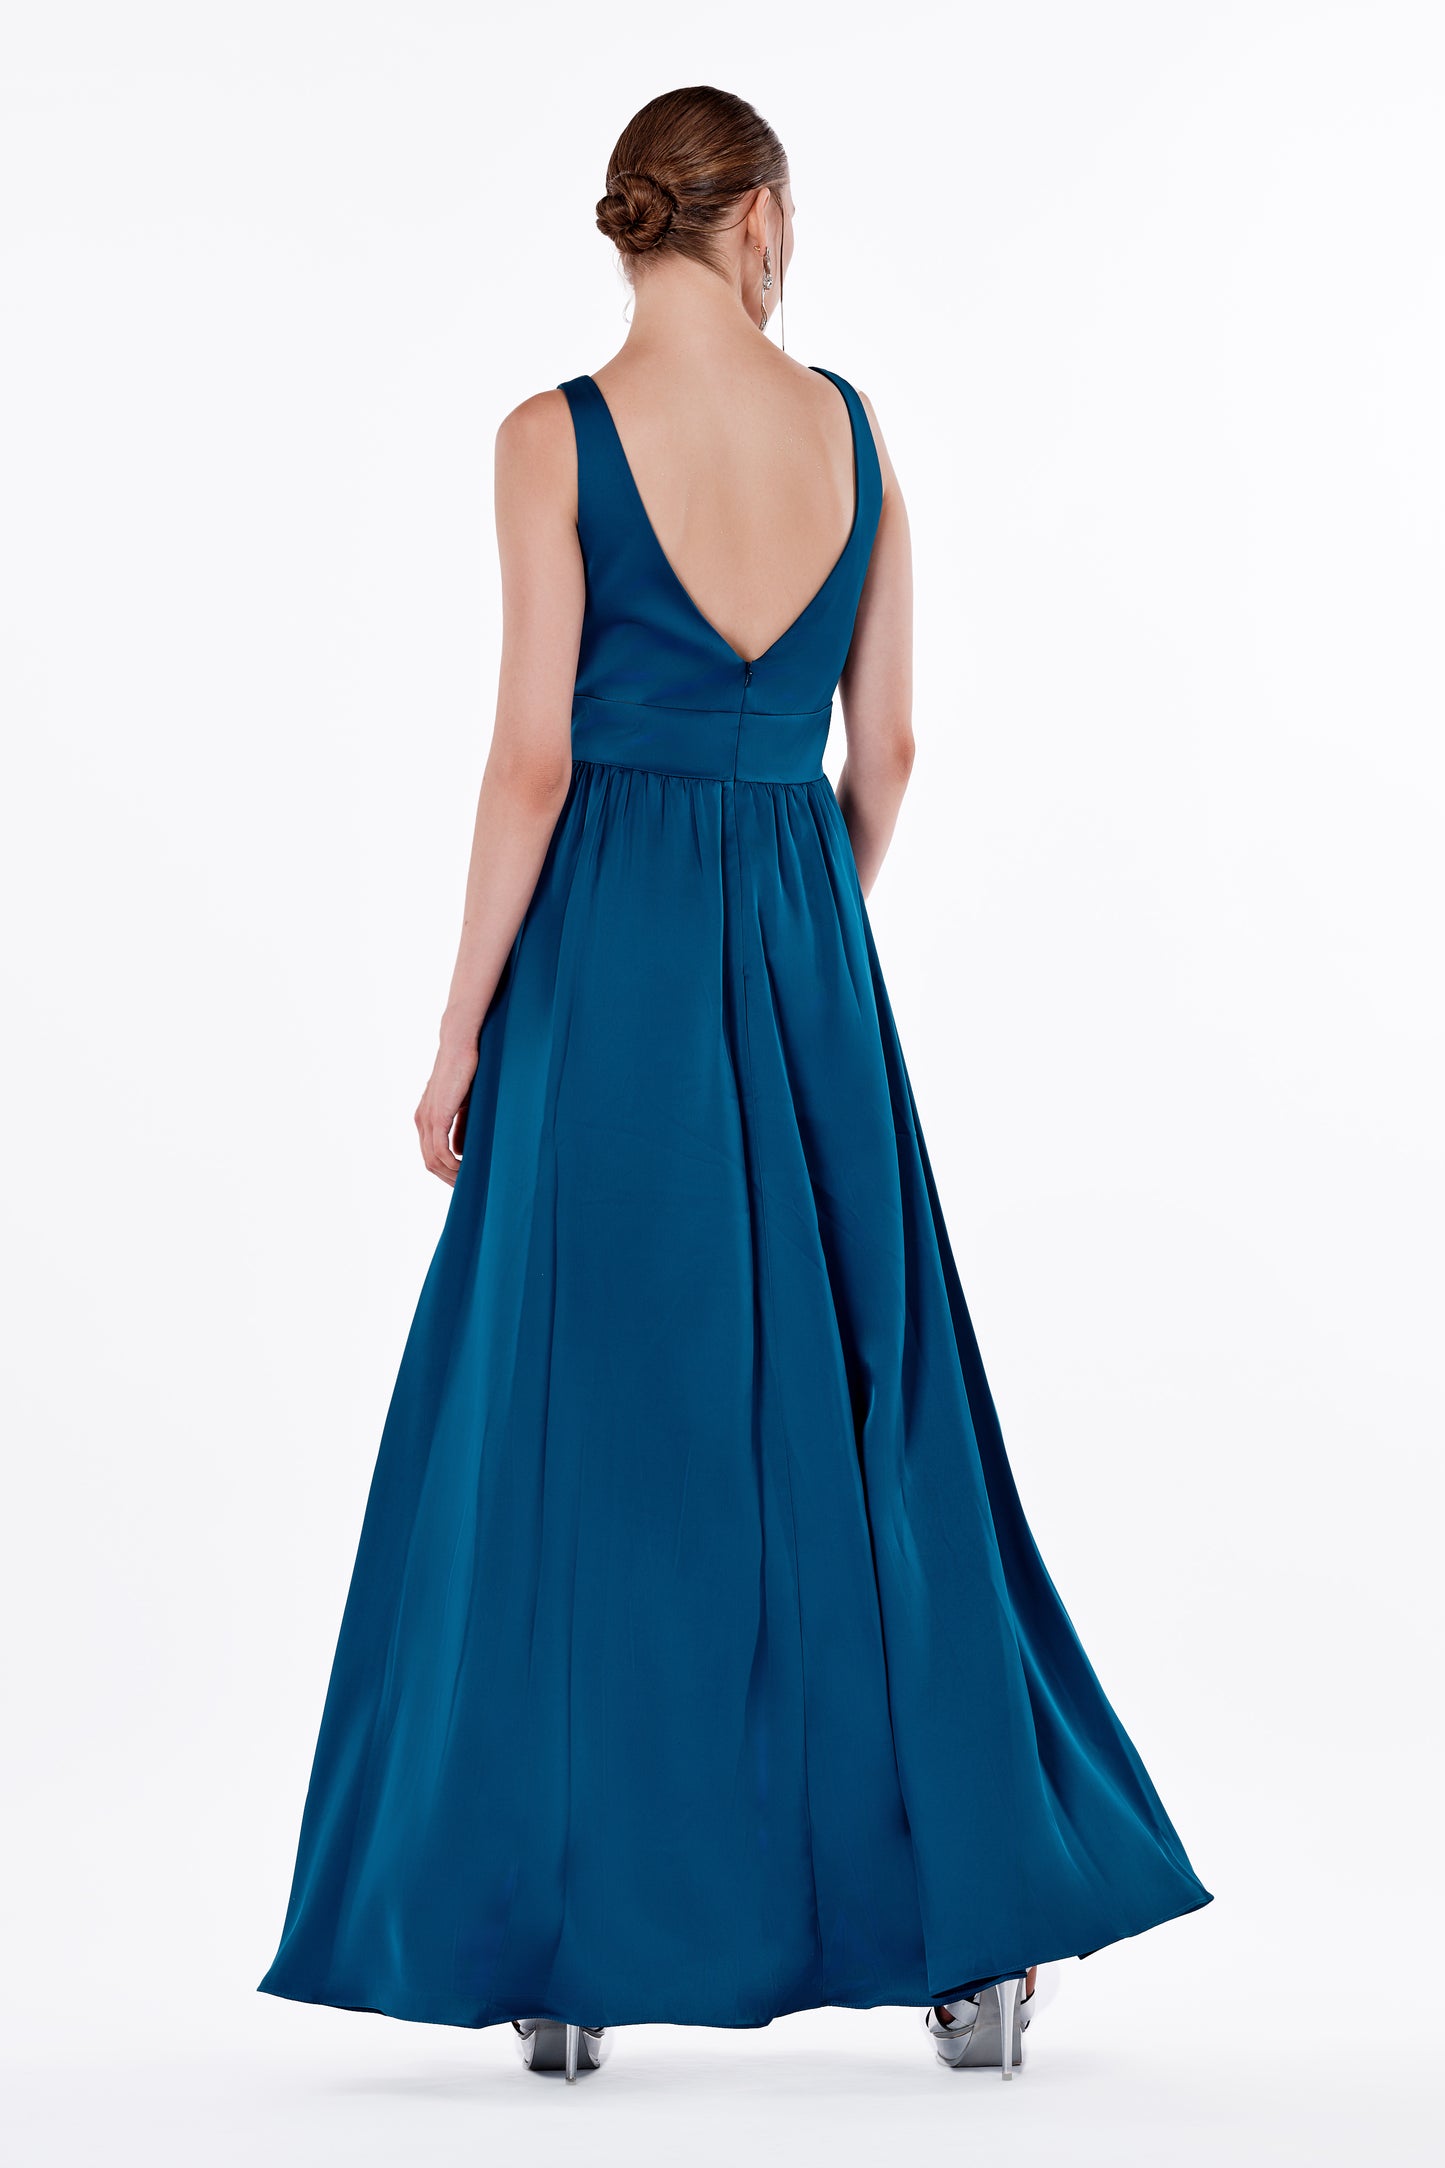 Exotic Blue Designer Dress